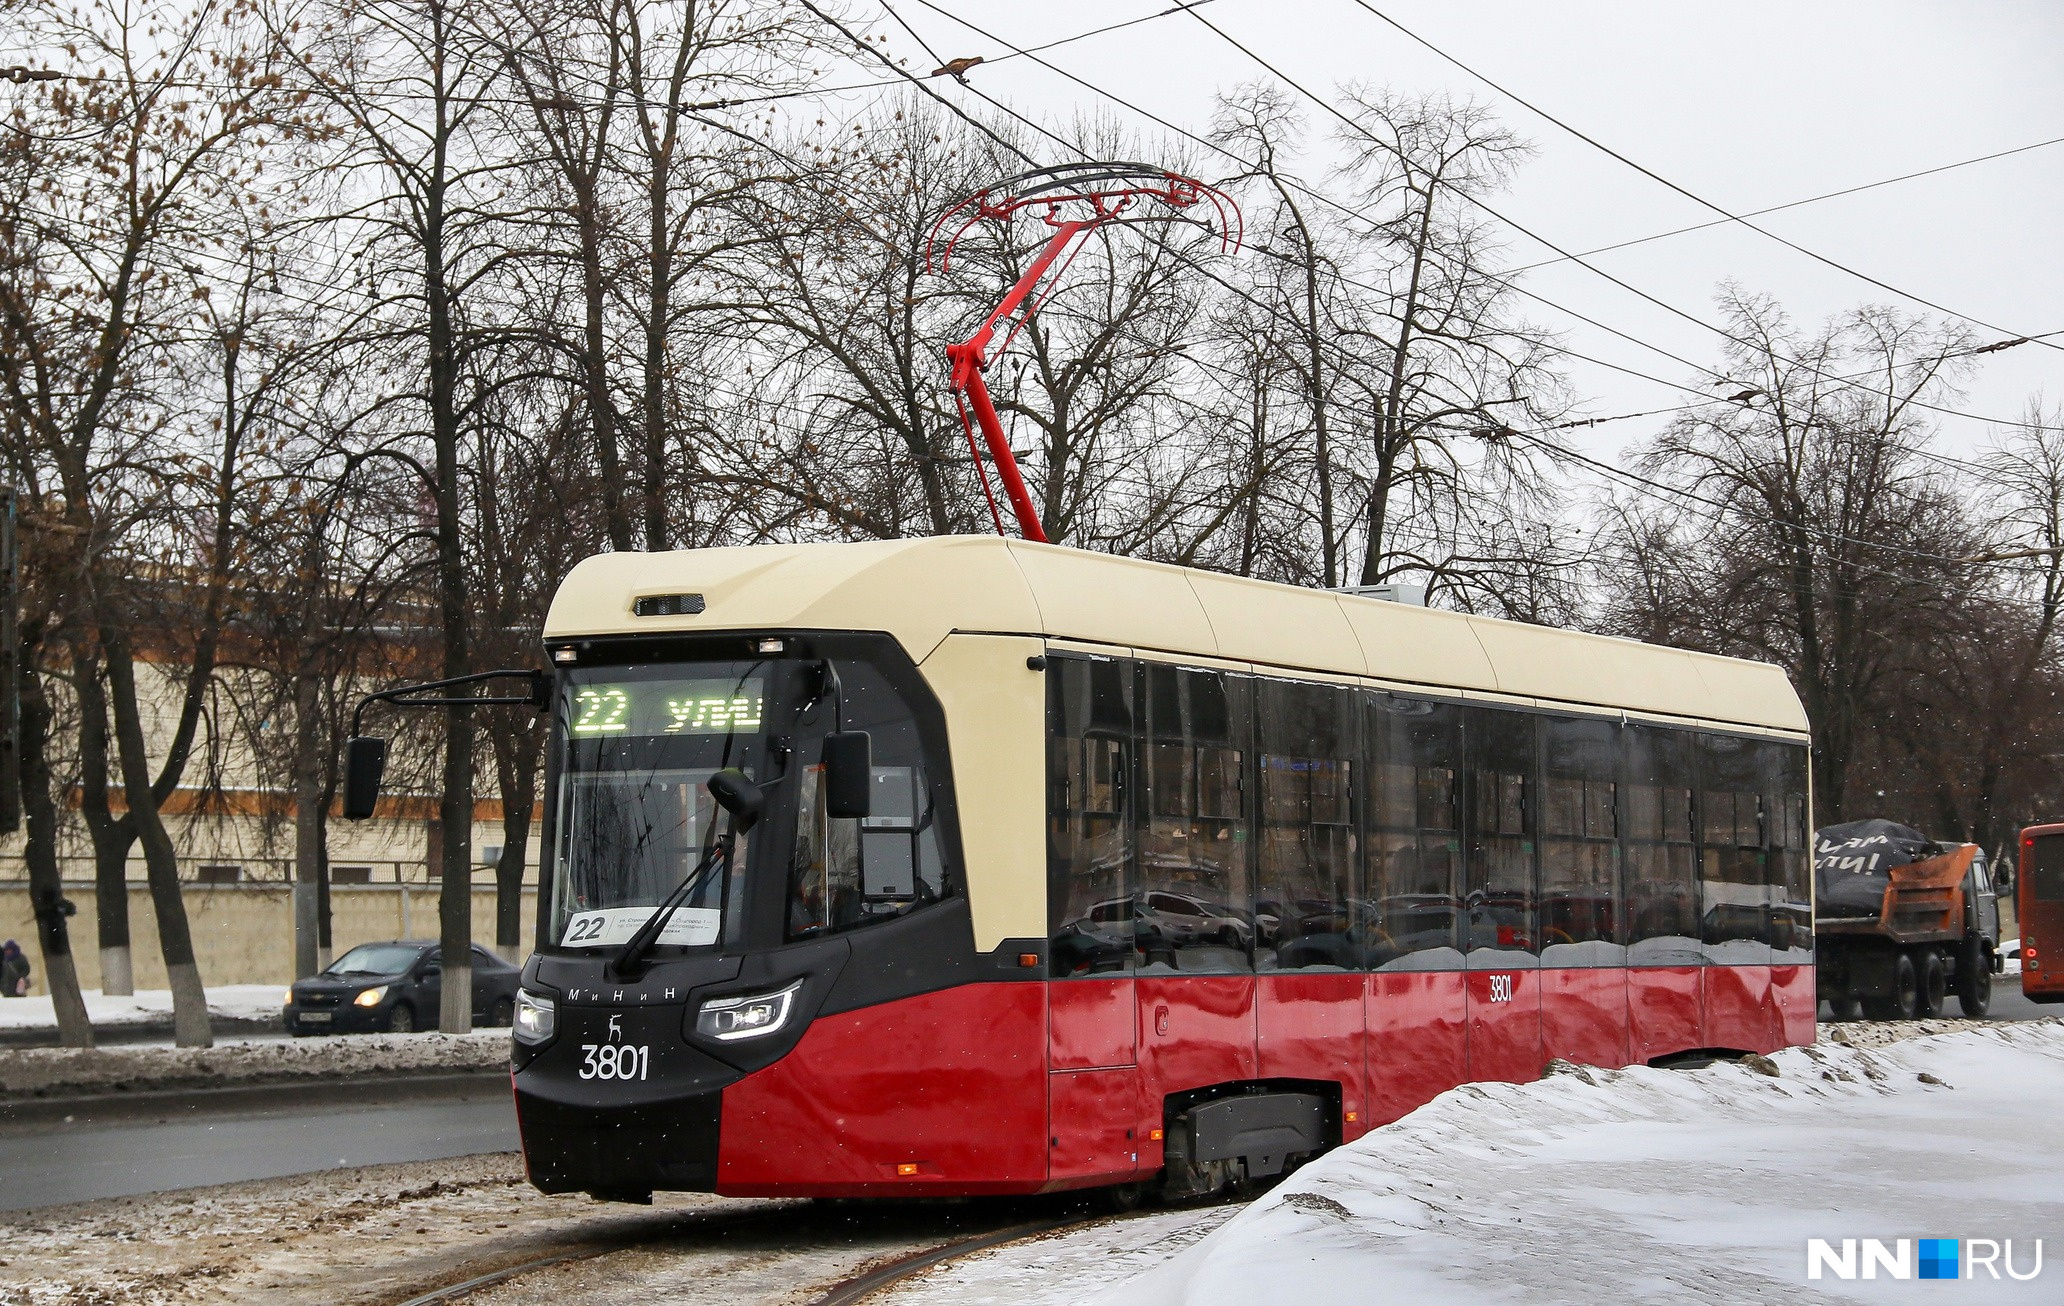 А это нижегородский трамвай